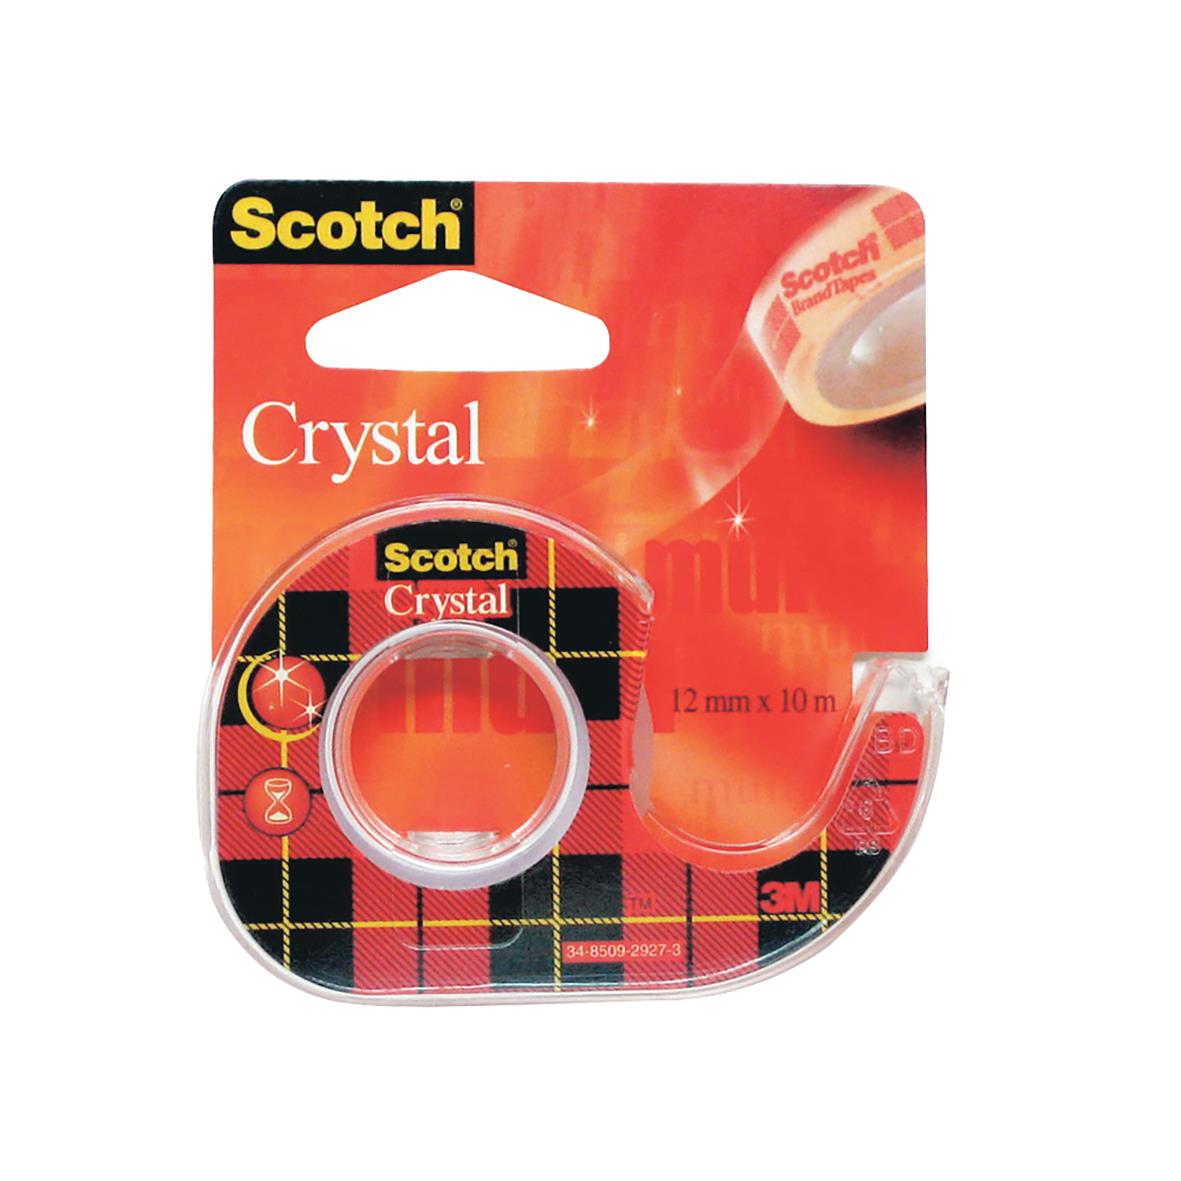 Tejp Scotch 600 Kristallklar med hållare 12mm x 10m